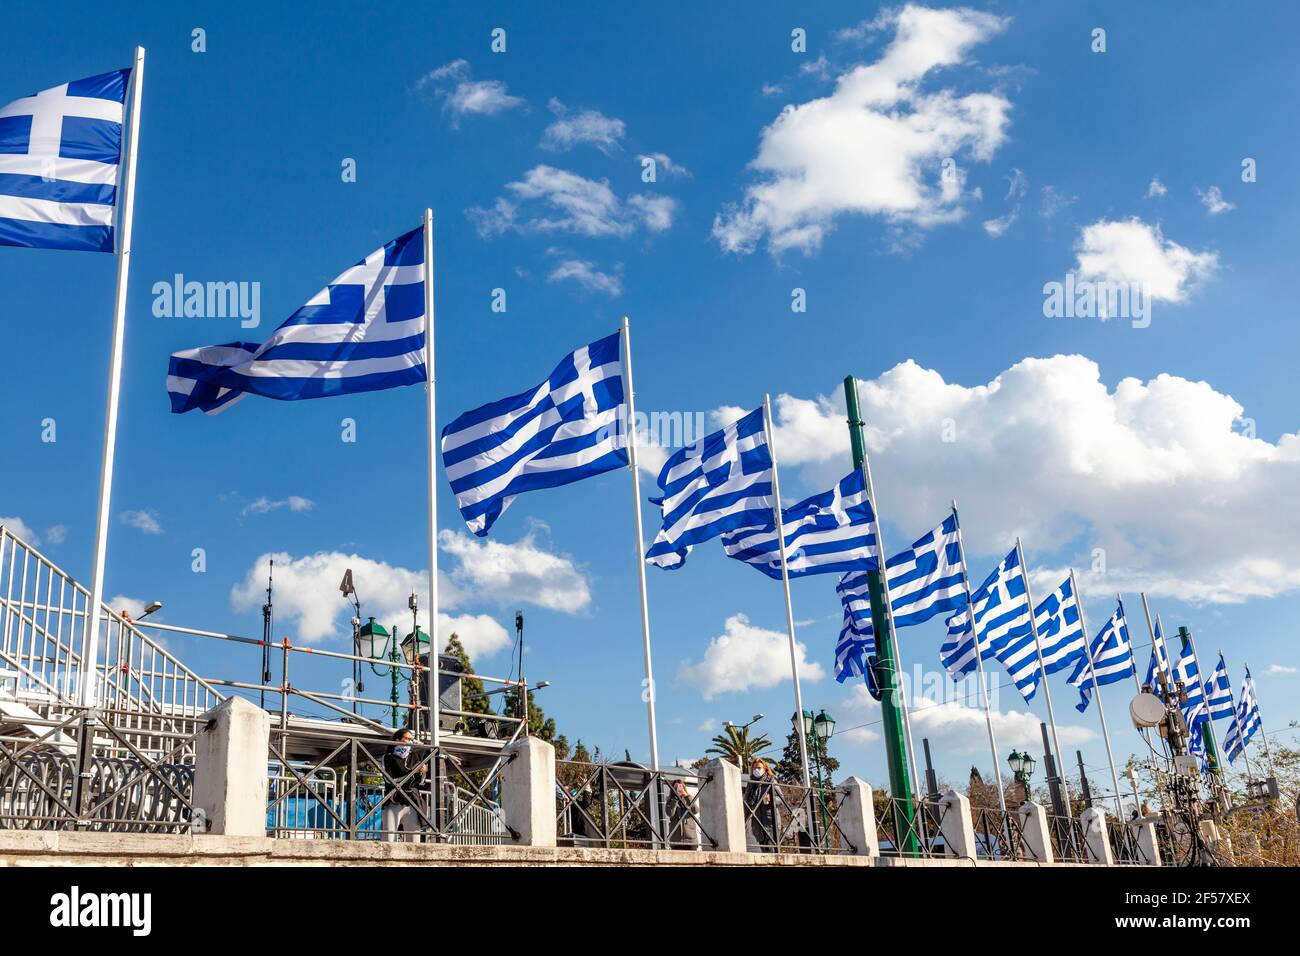 Bandiere greche che sventolano in piazza Syntagma, Atene, Grecia, durante le celebrazioni per i 200 anni della Giornata greca dell'Indipendenza (25 marzo 1821-2021). Foto Stock